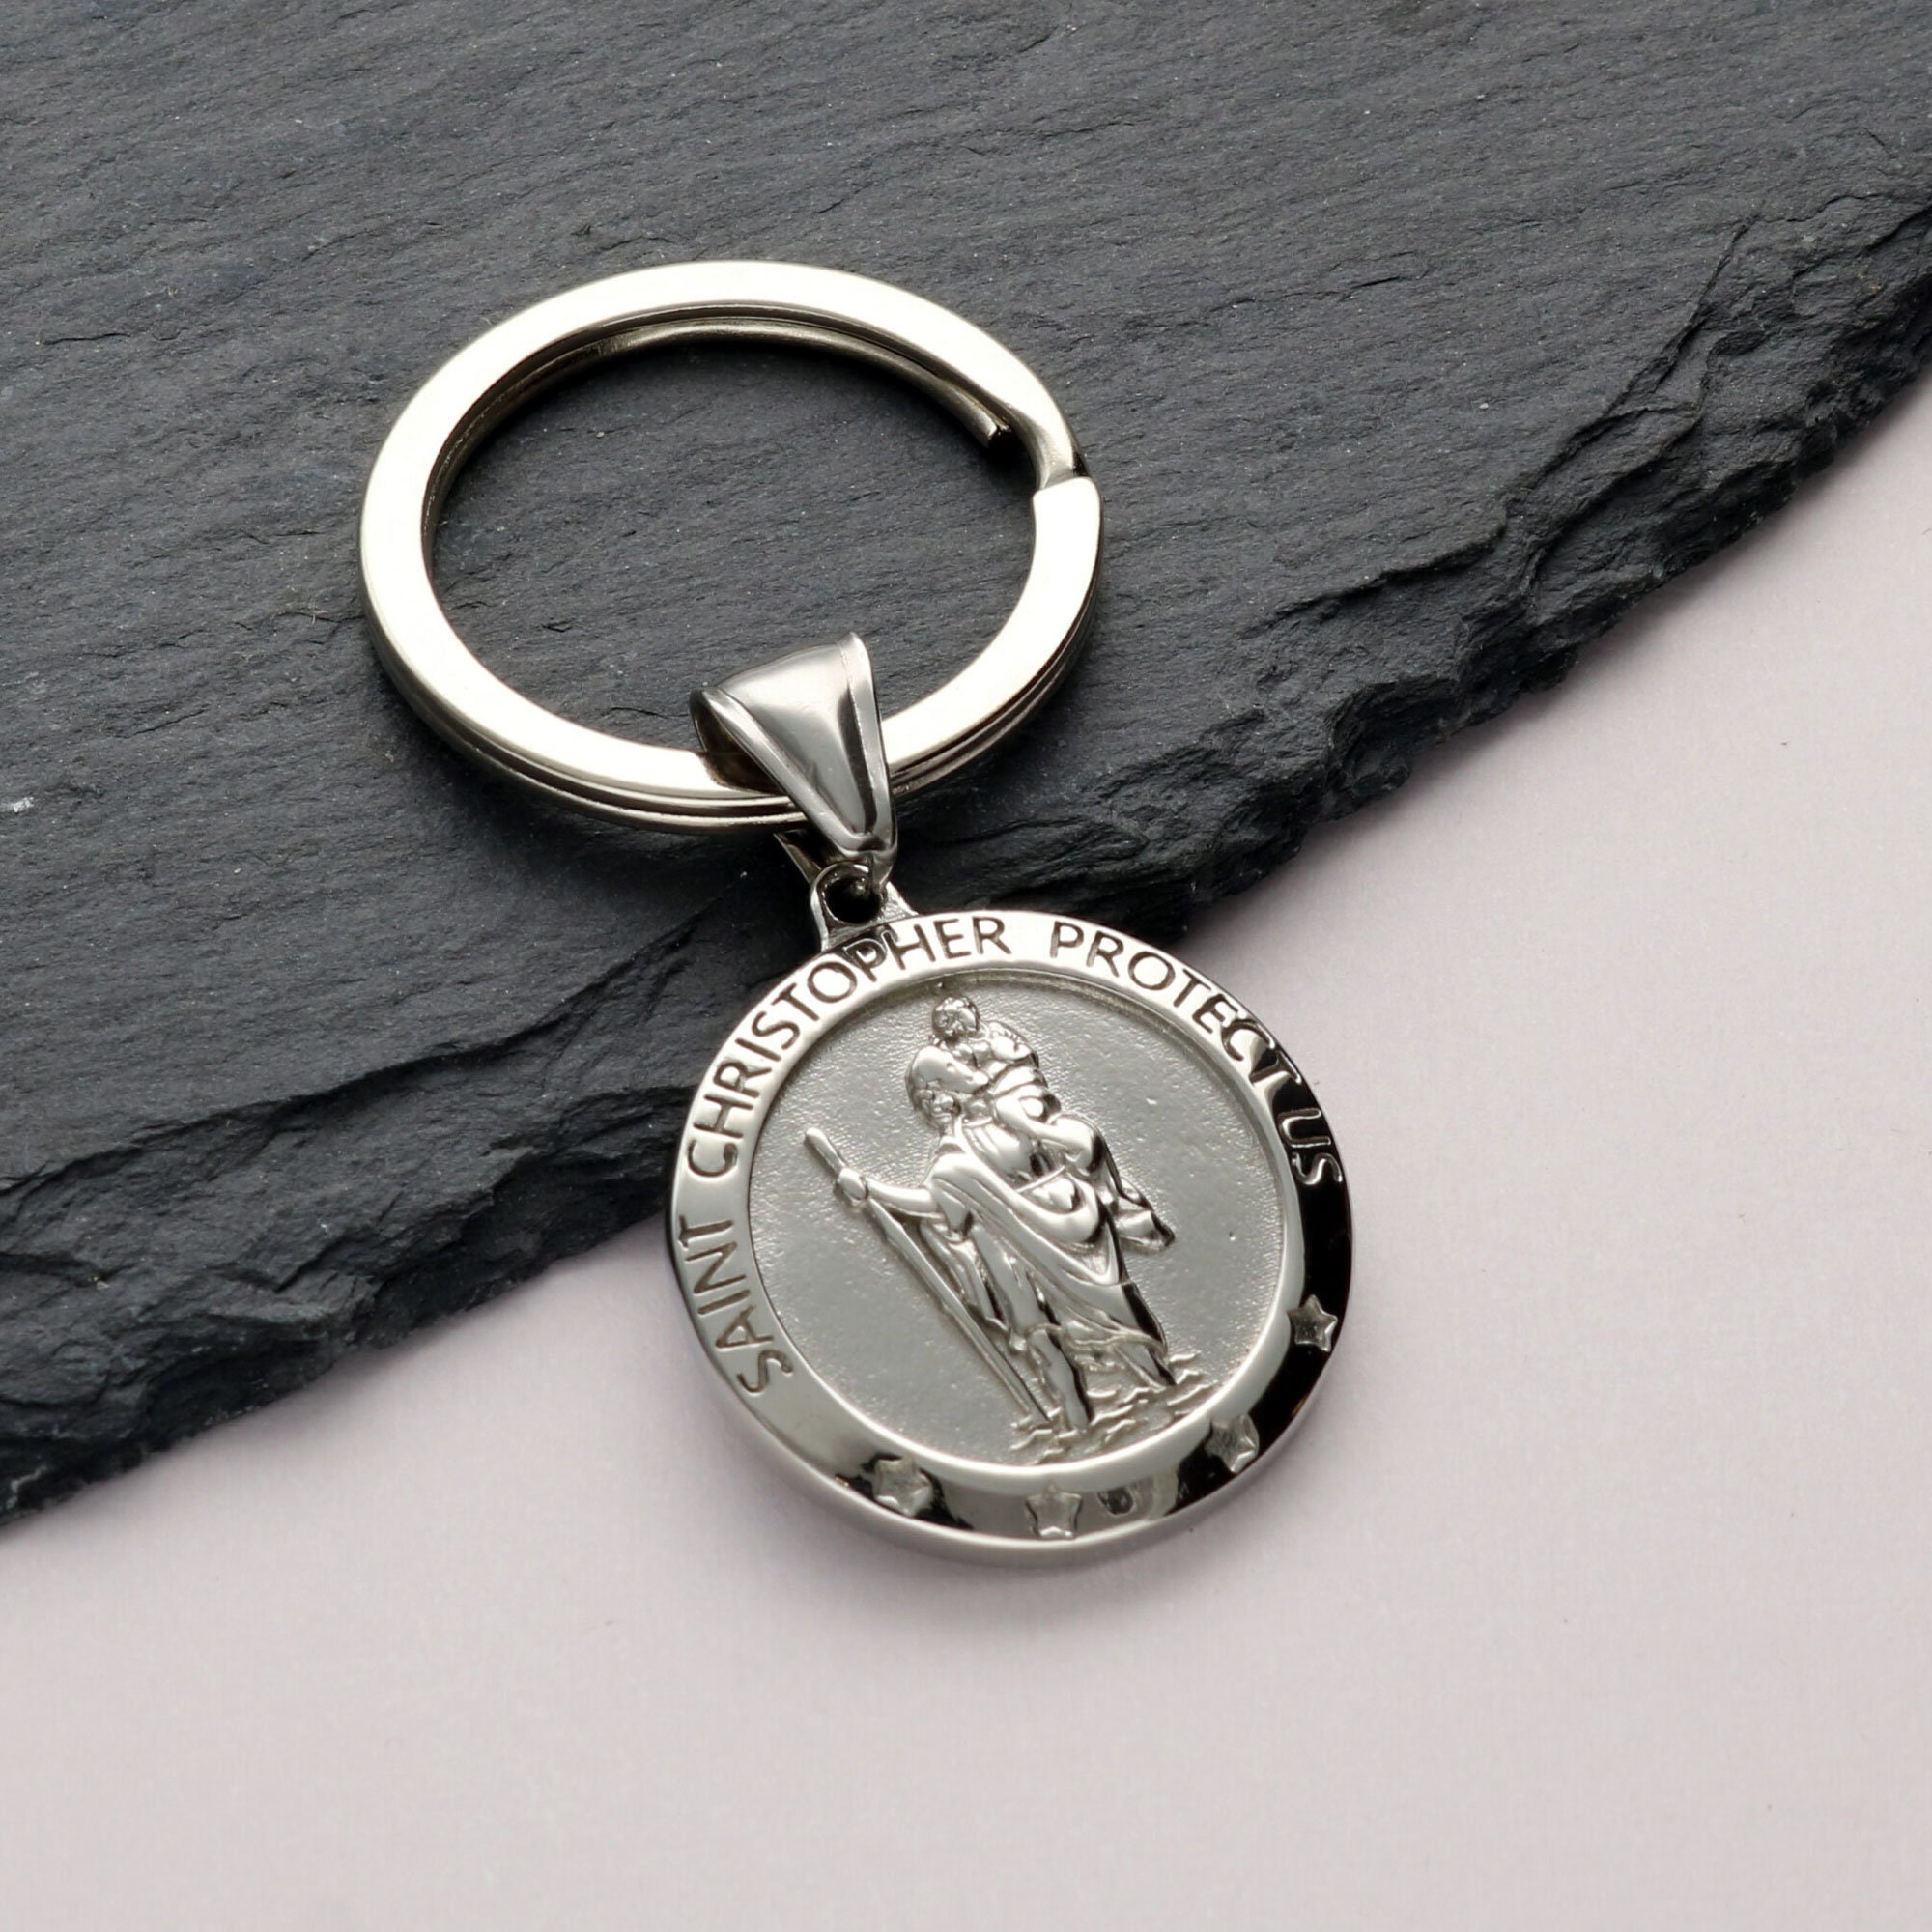 Medaille aimantée Saint Christophe pour voiture, Métal argenté, Ø 3cm |  Articles Religieux Junker